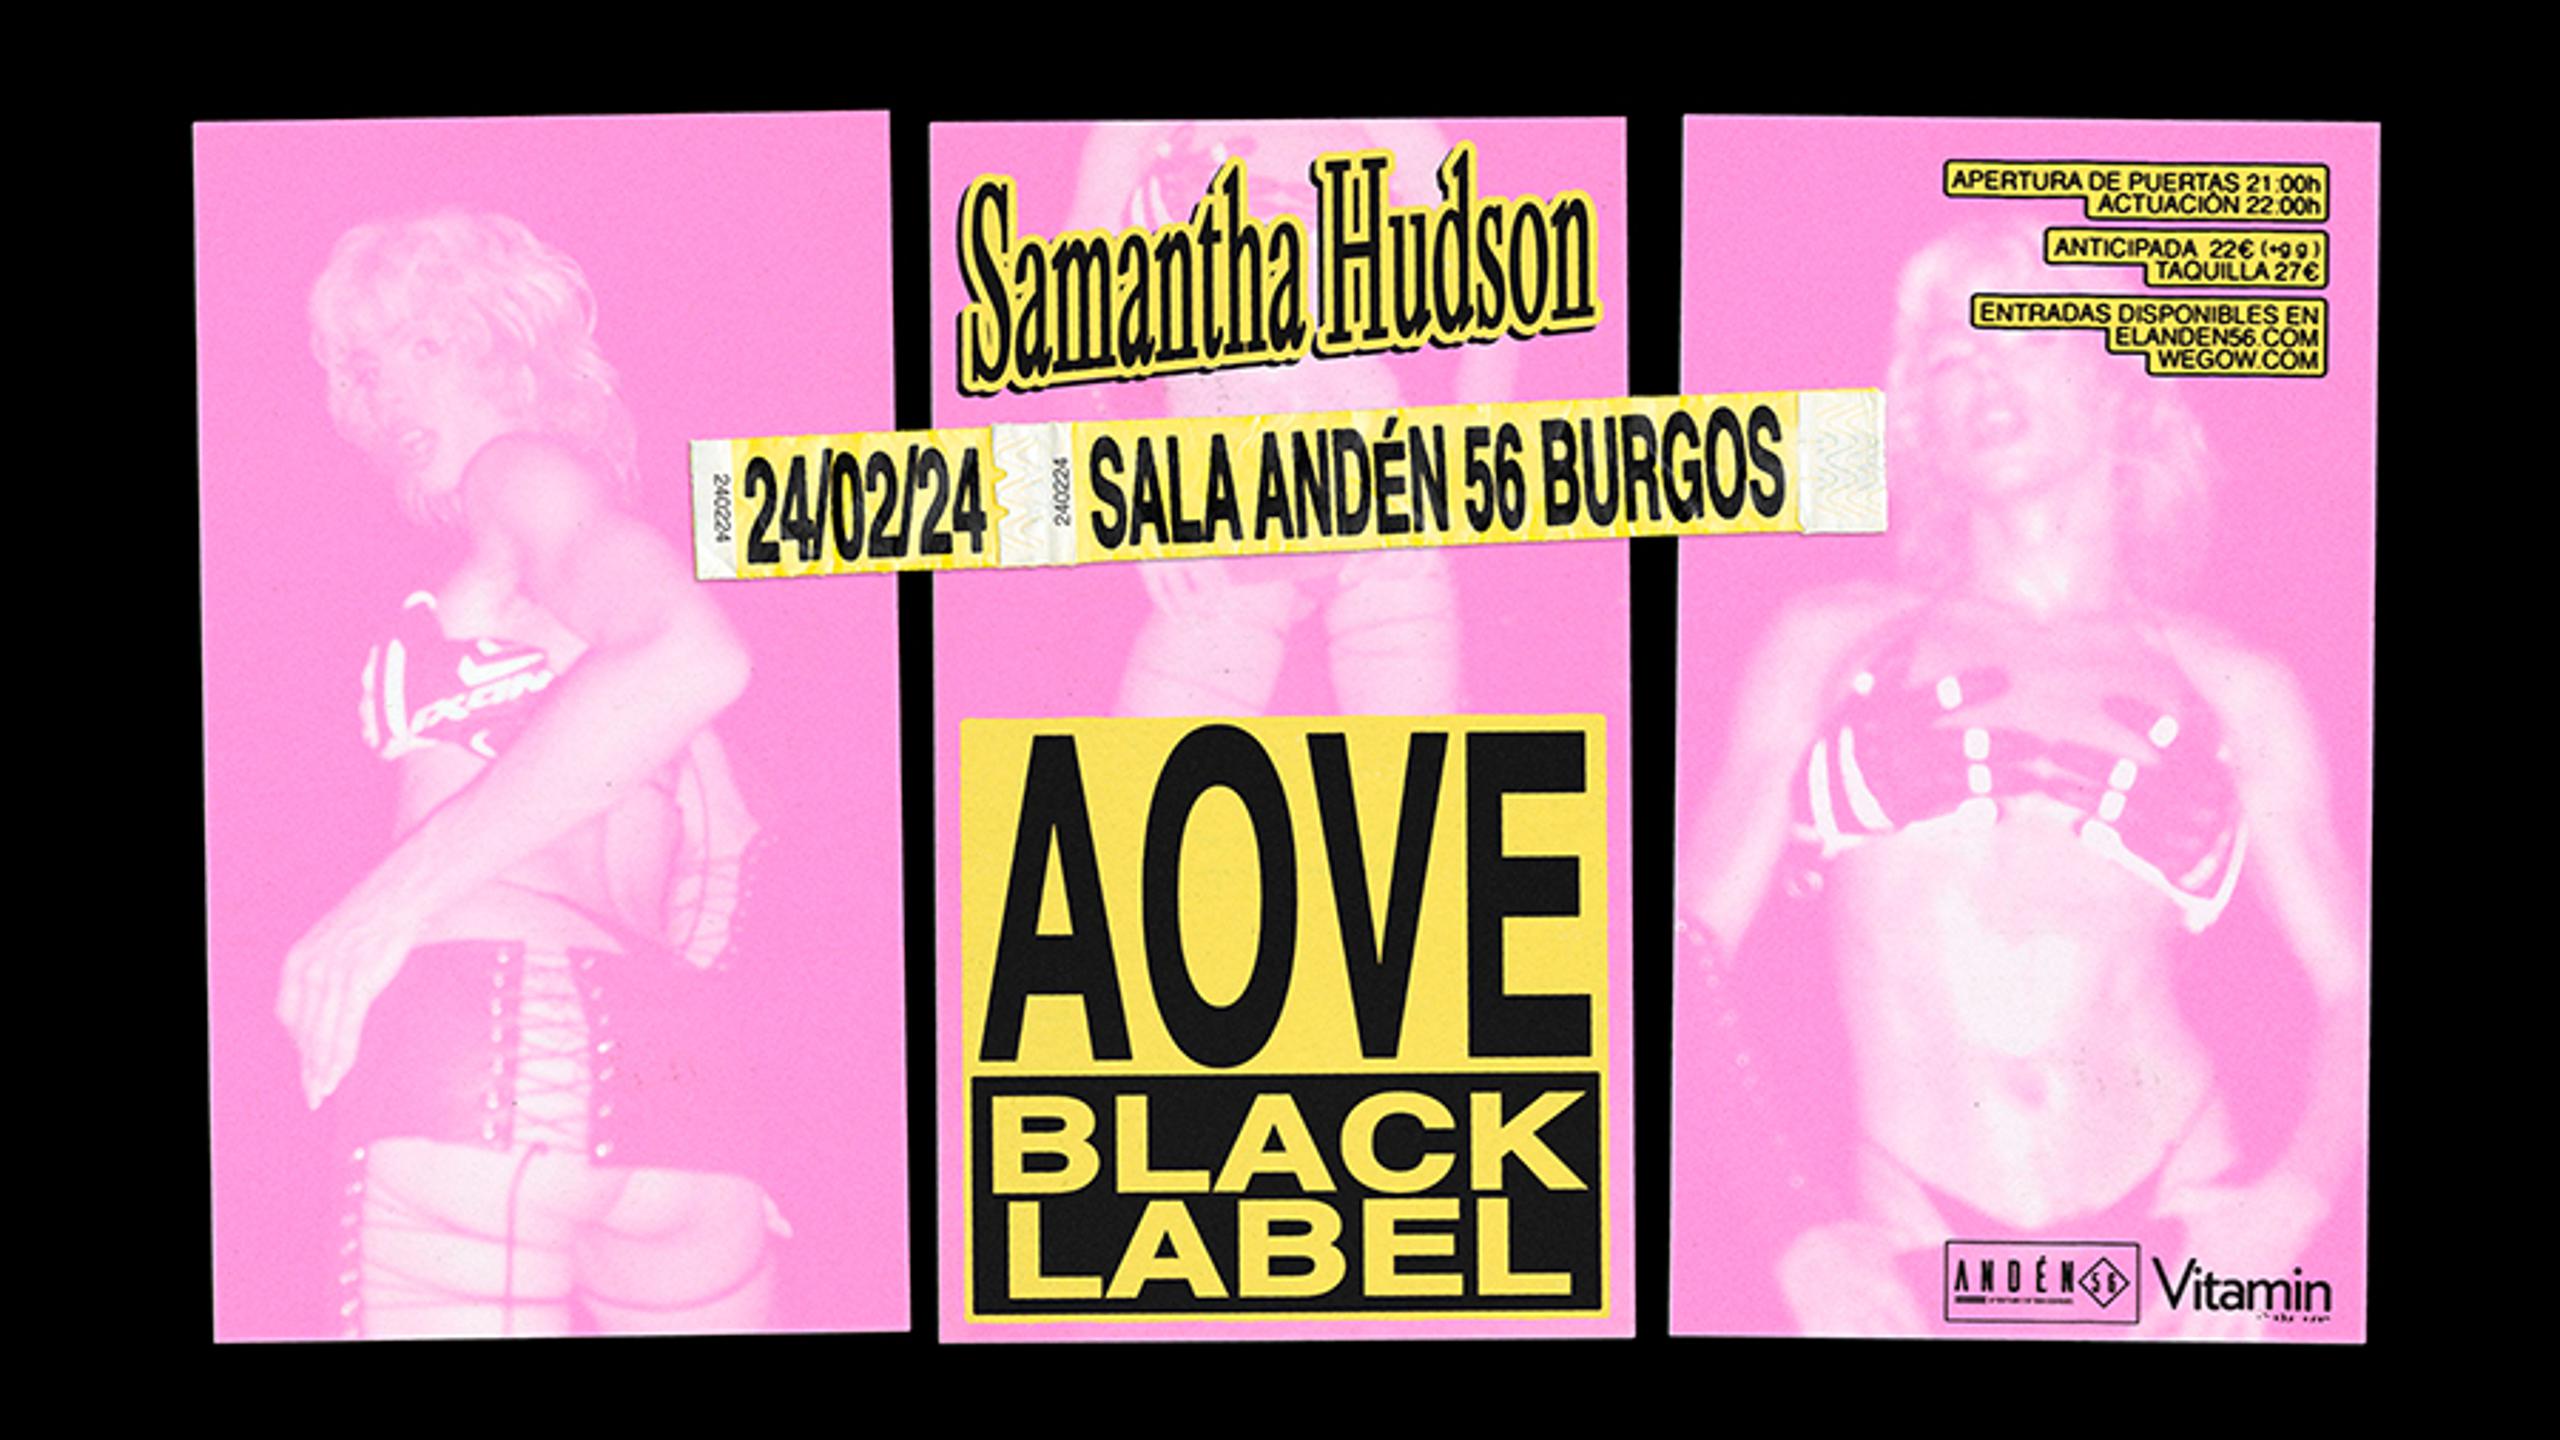 Fotografía promocional de SAMANTHA HUDSON Aove Black Label en Burgos